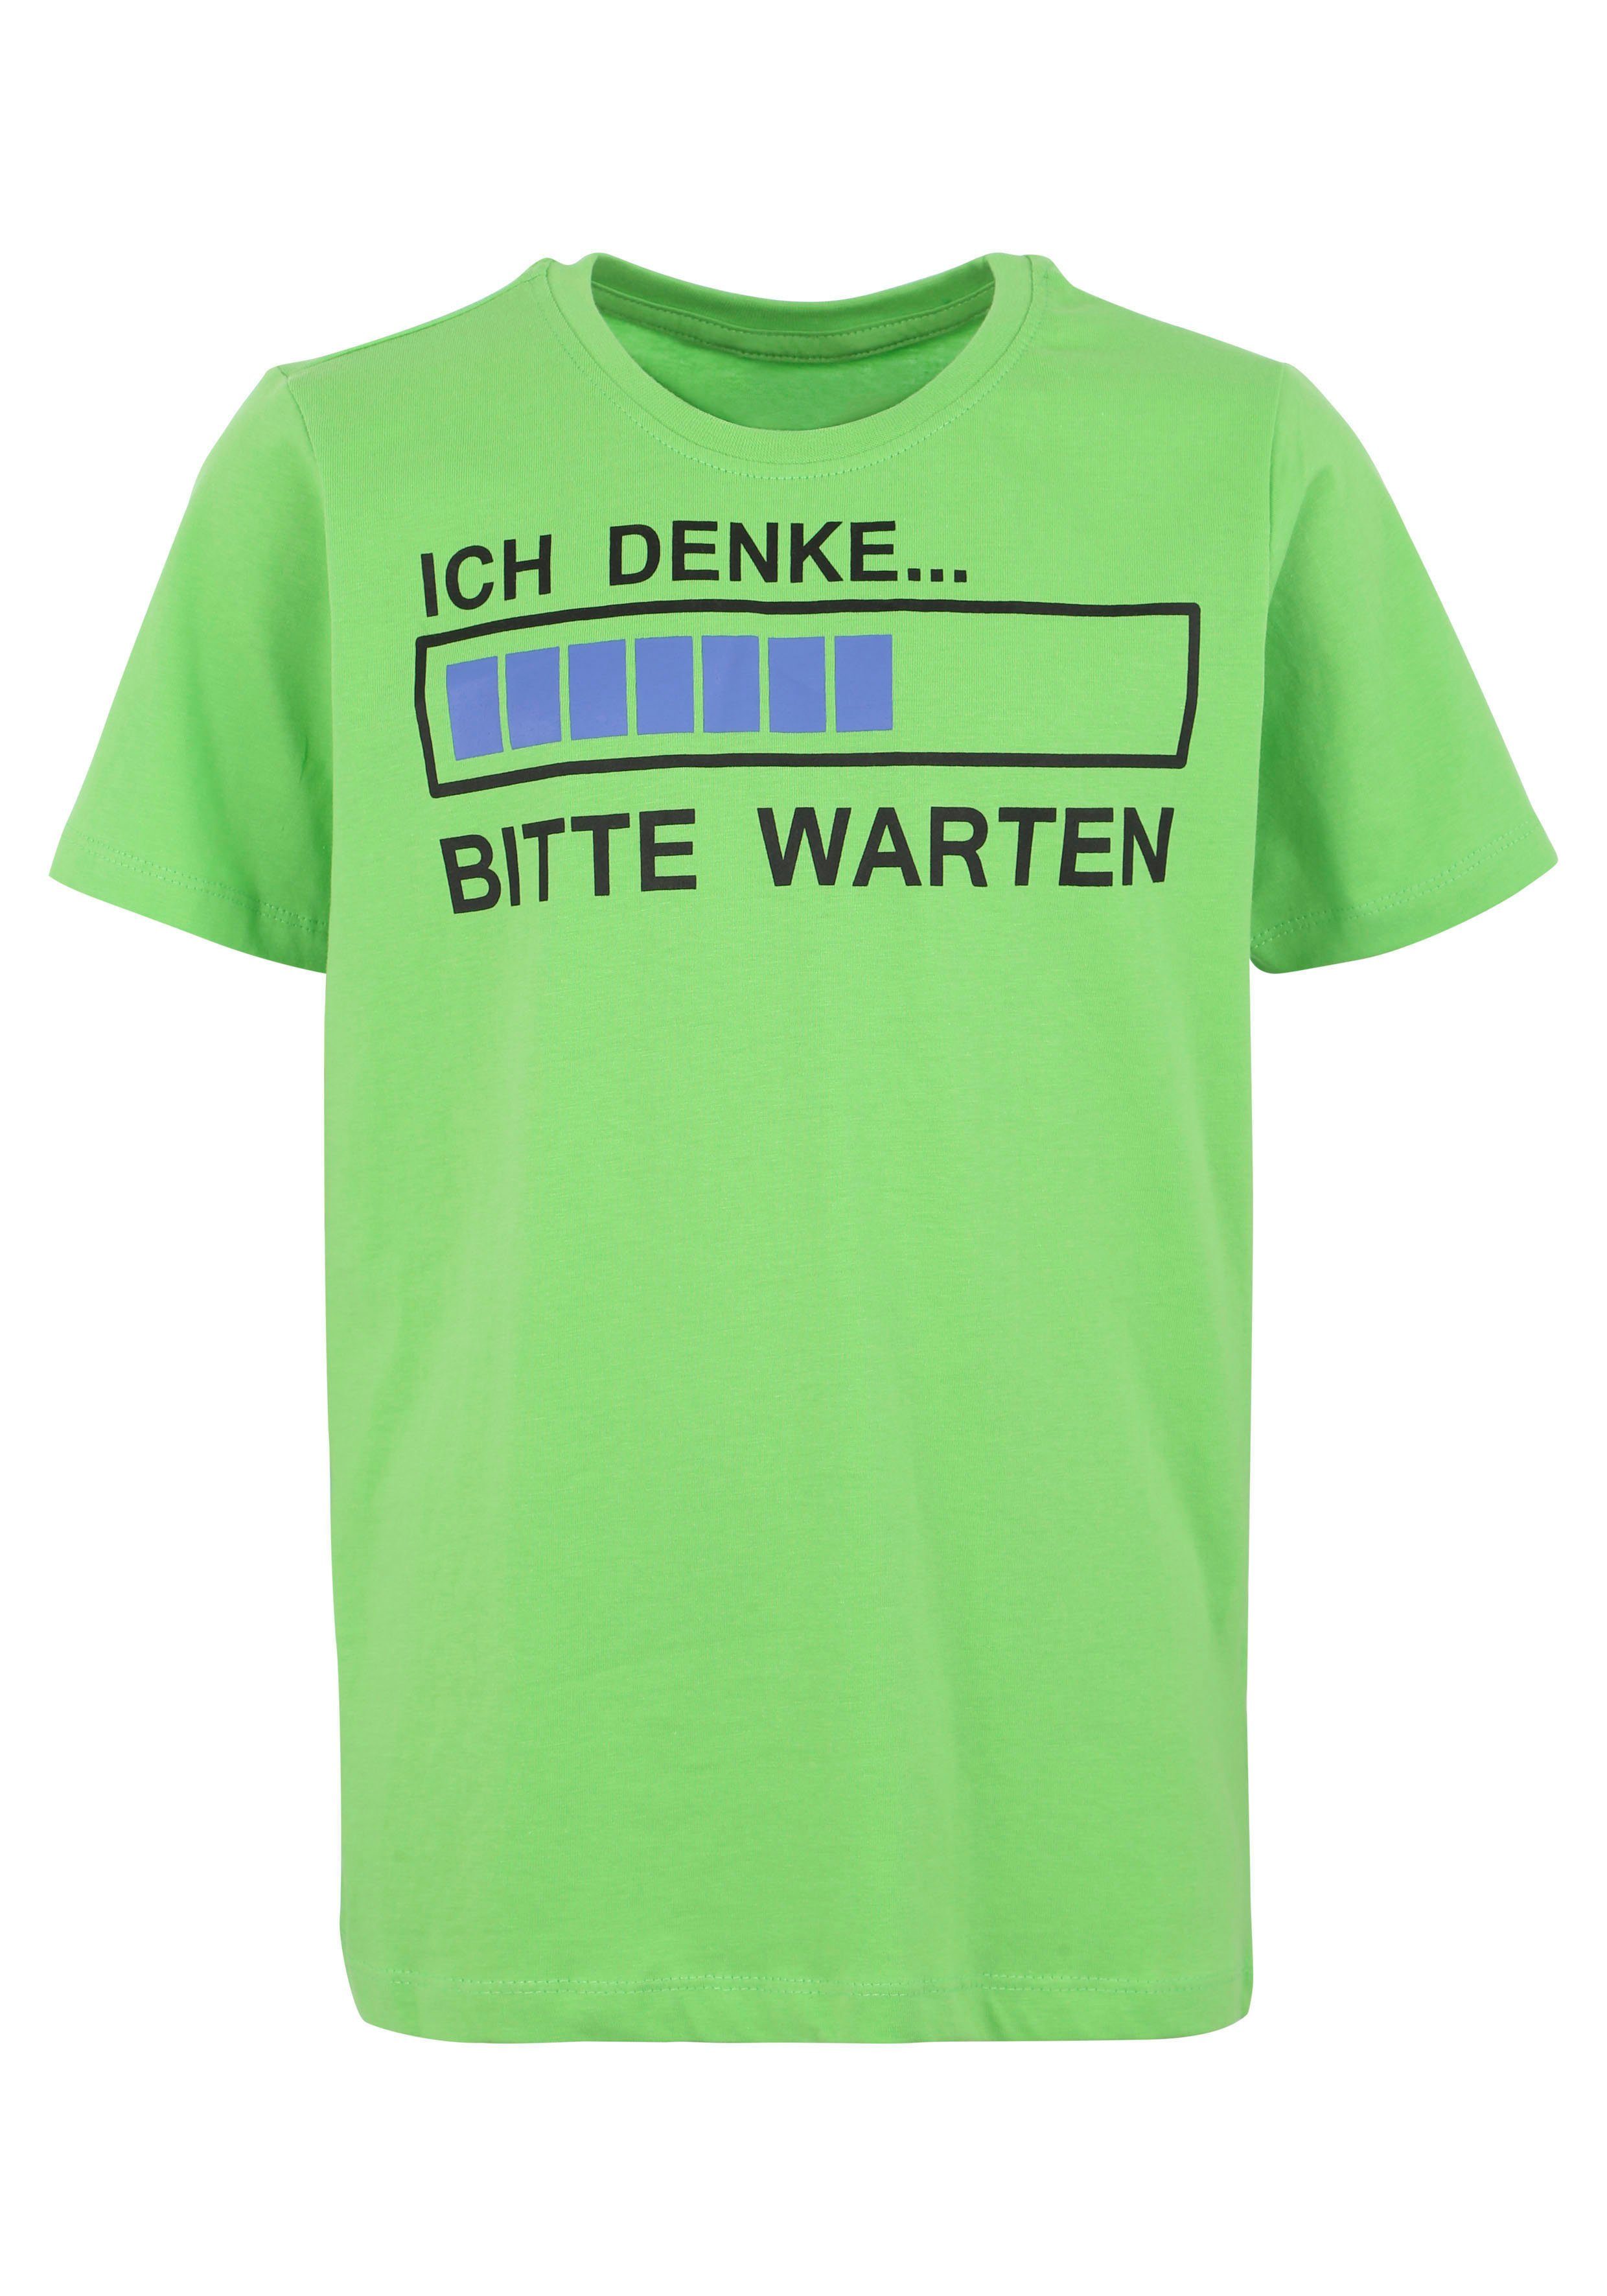 KIDSWORLD T-Shirt ICH WARTEN DENKE...BITTE Spruch